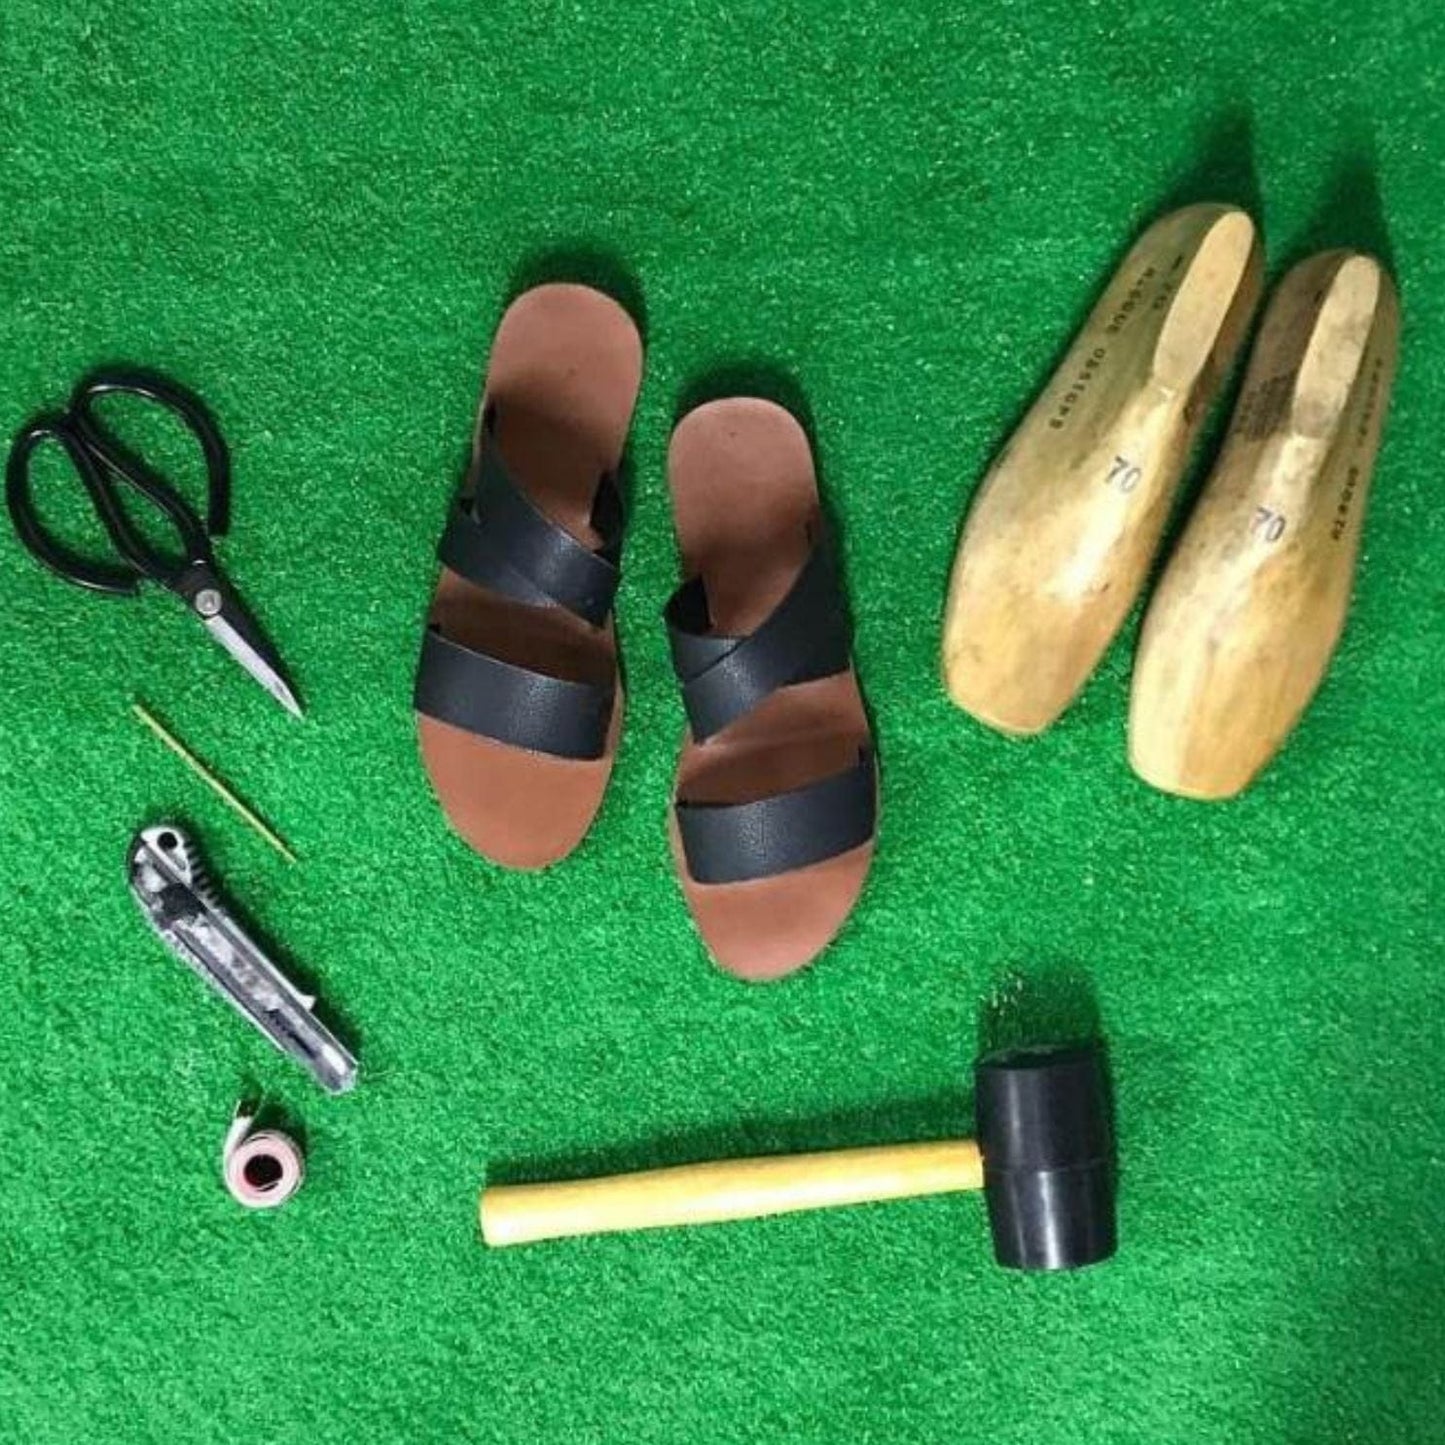 Sandal-making workshop